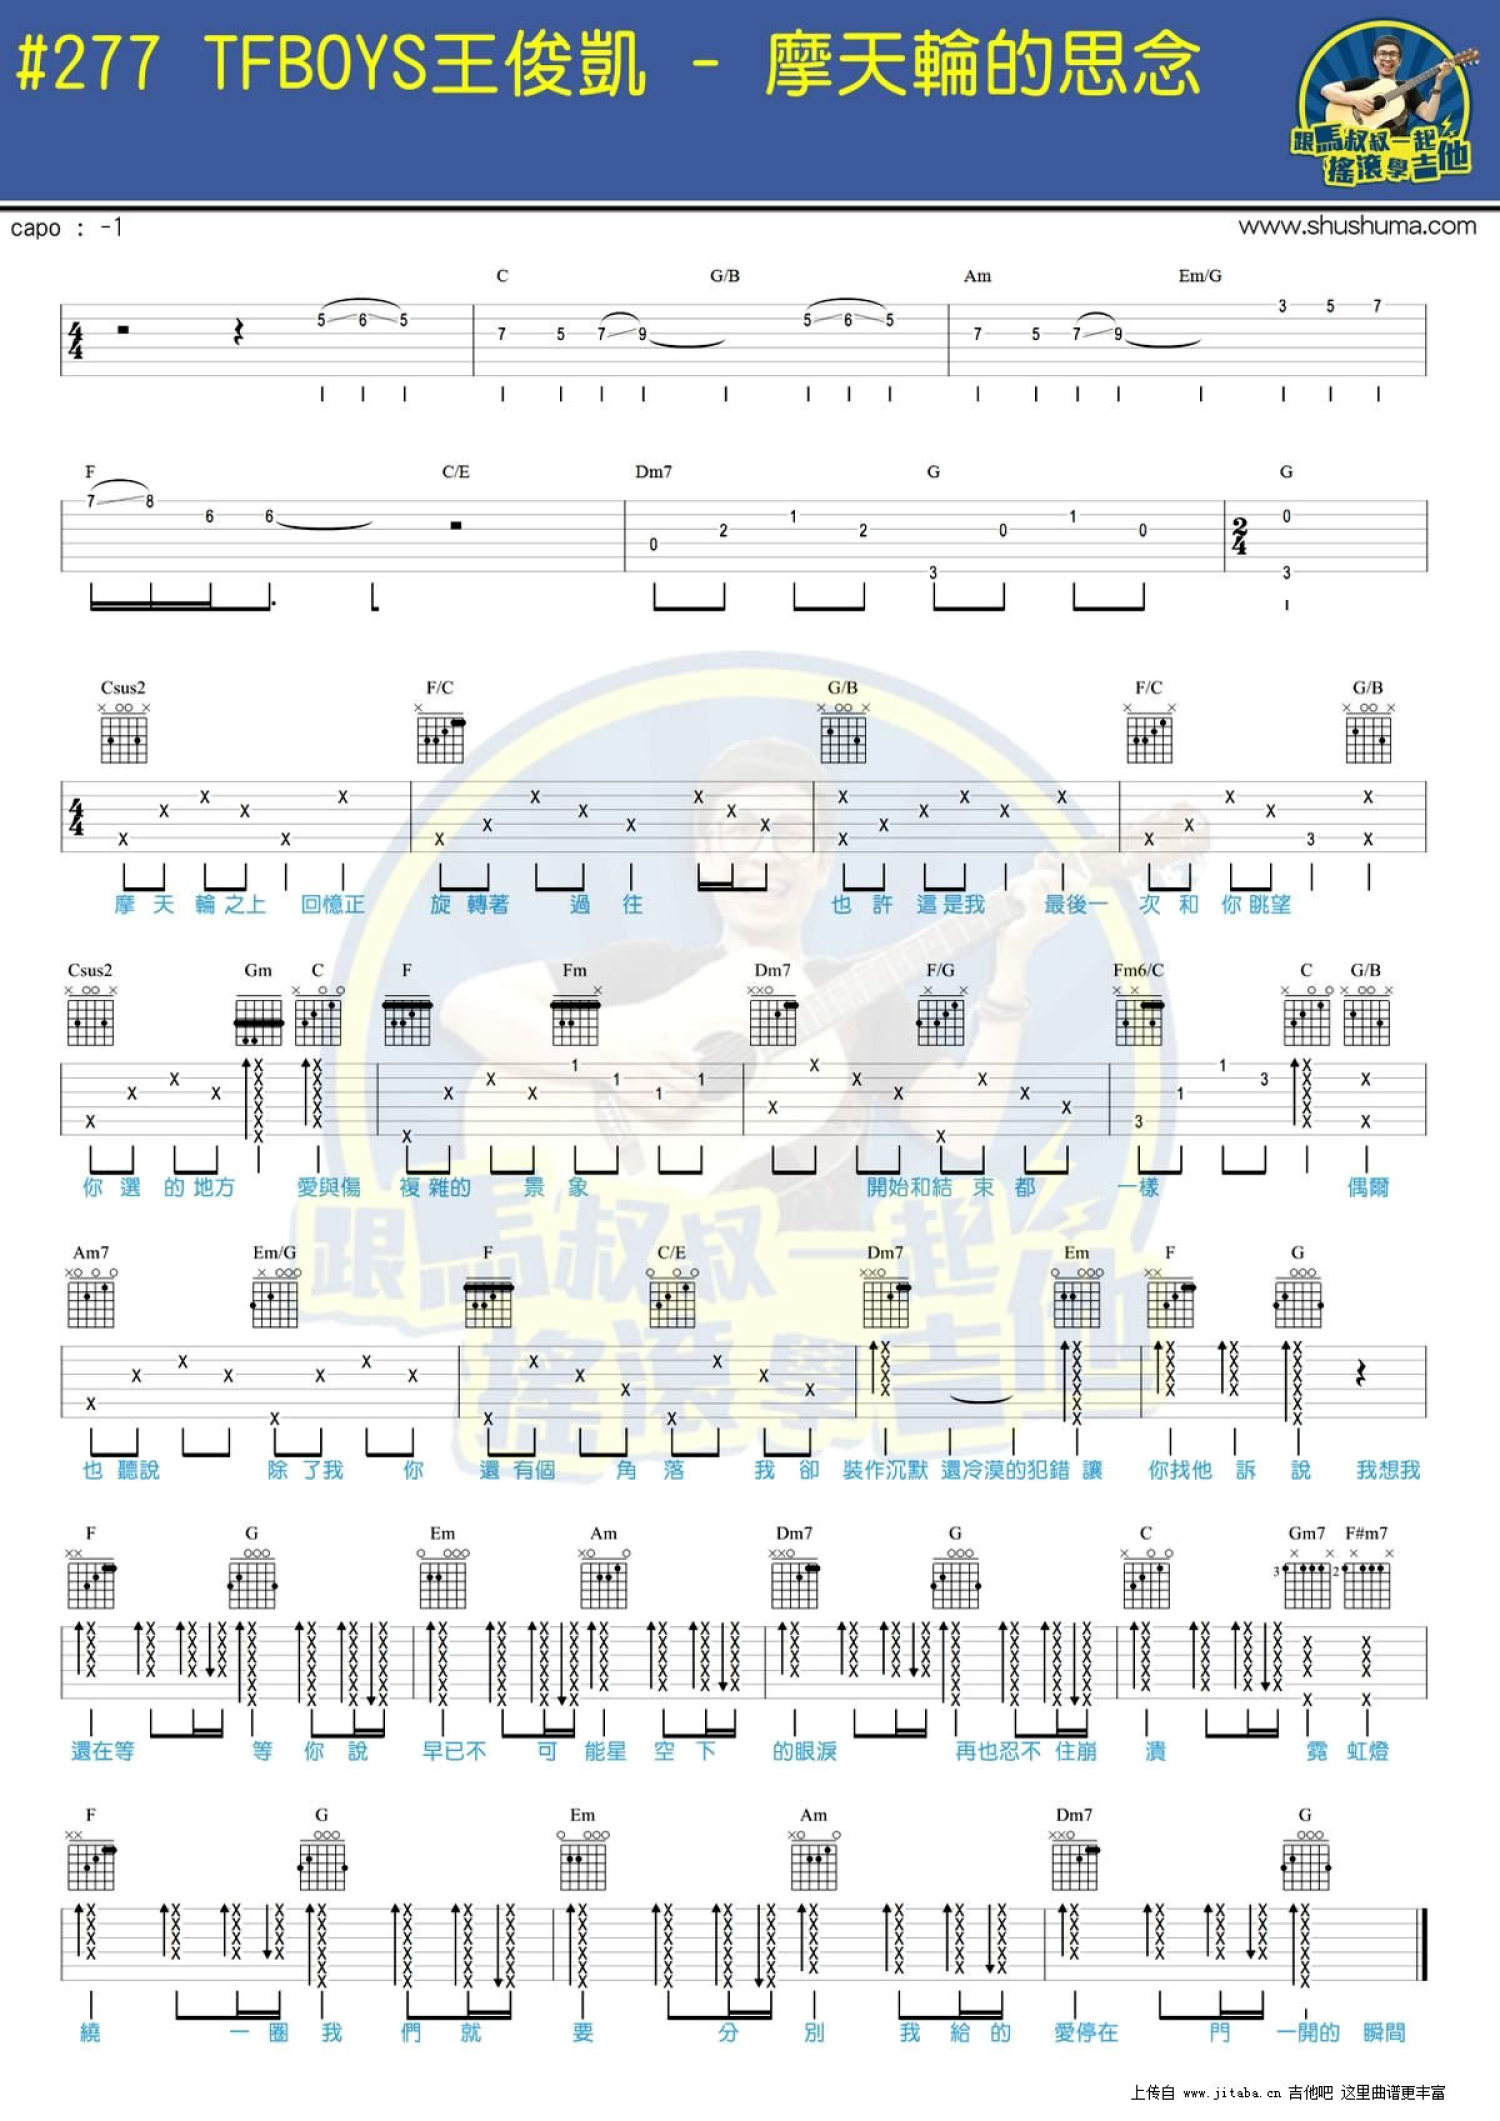 摩天轮的思念-超少年密码插曲五线谱预览3-钢琴谱文件（五线谱、双手简谱、数字谱、Midi、PDF）免费下载